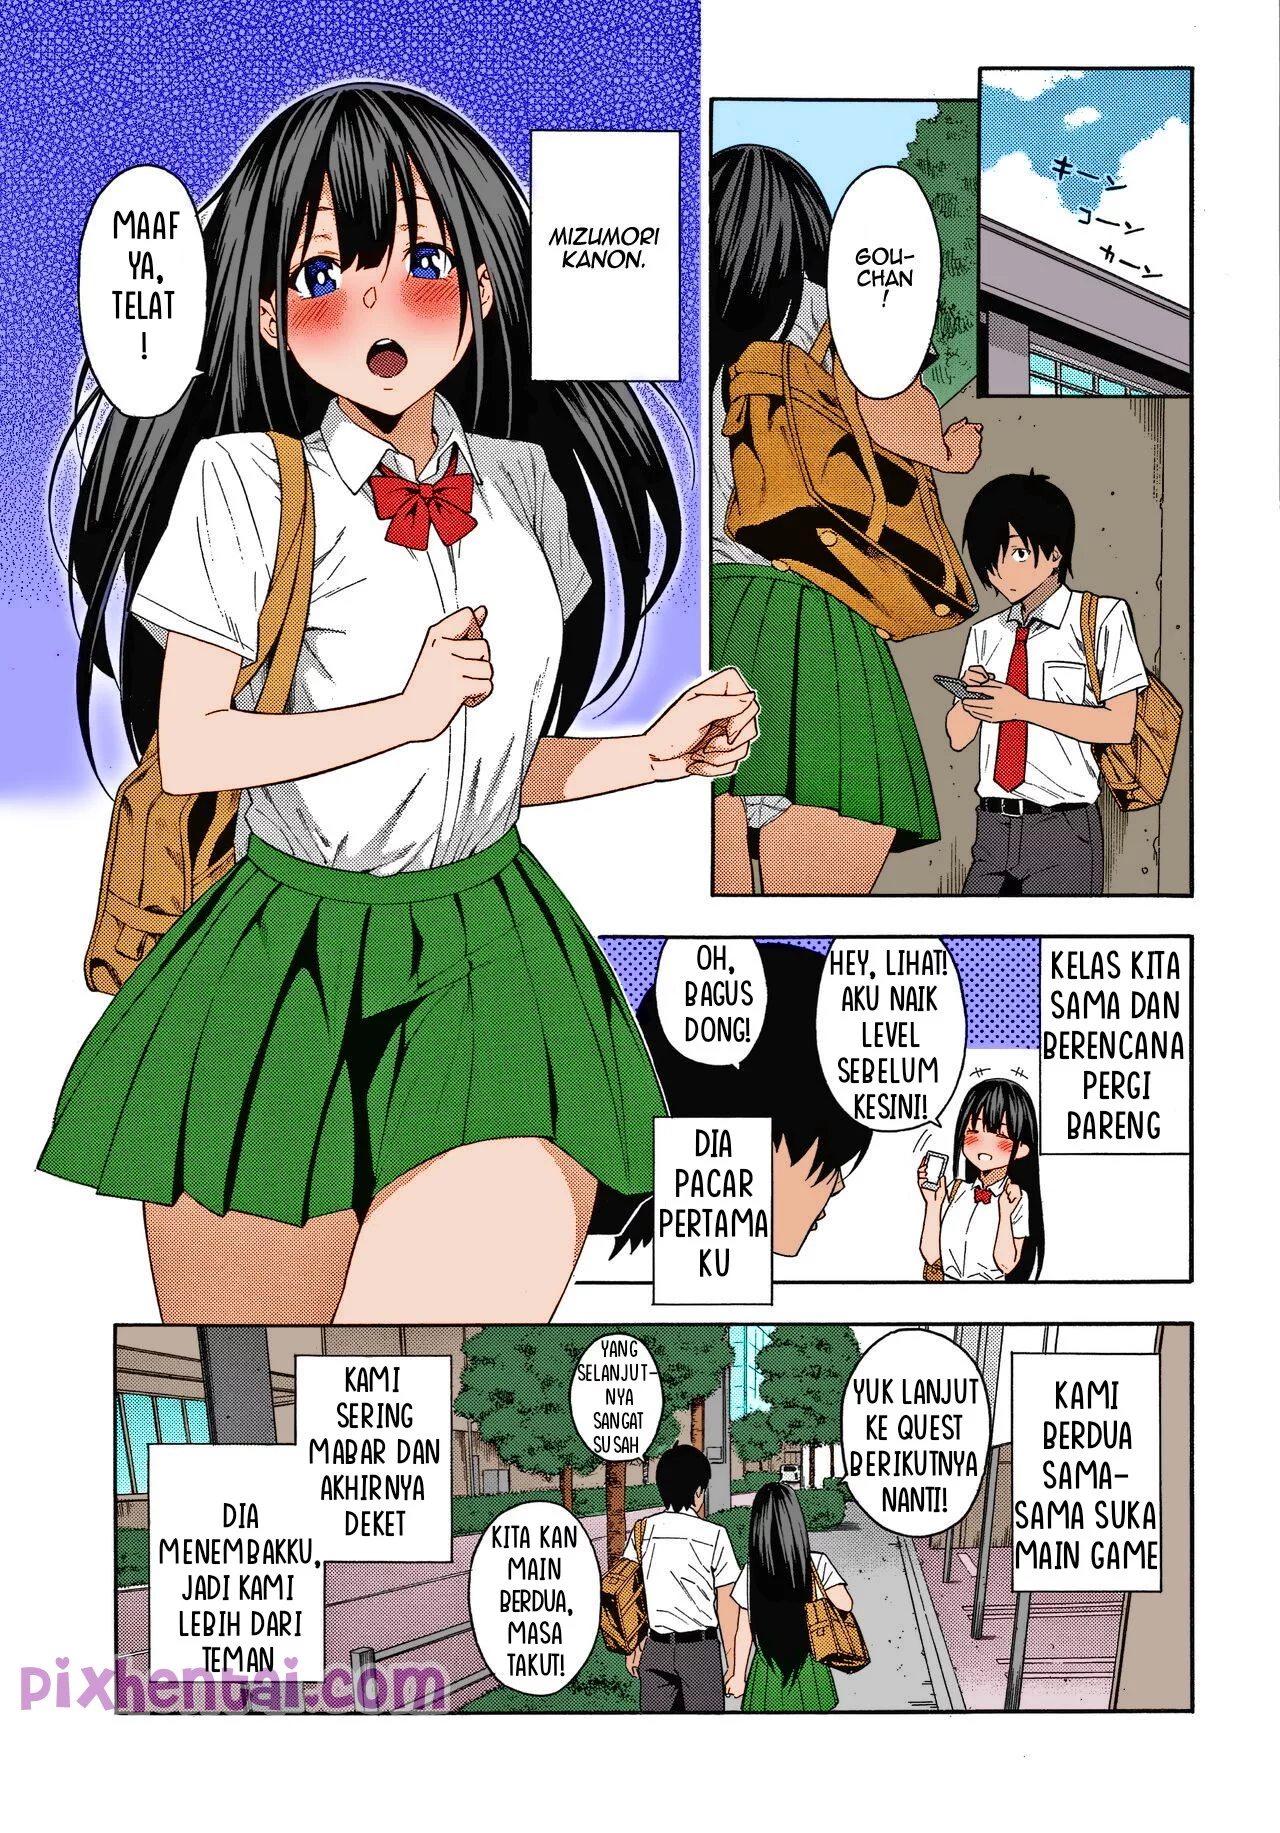 Komik hentai xxx manga sex bokep Saikai Kenangan Tentangmu adalah Bahan Coliku 7